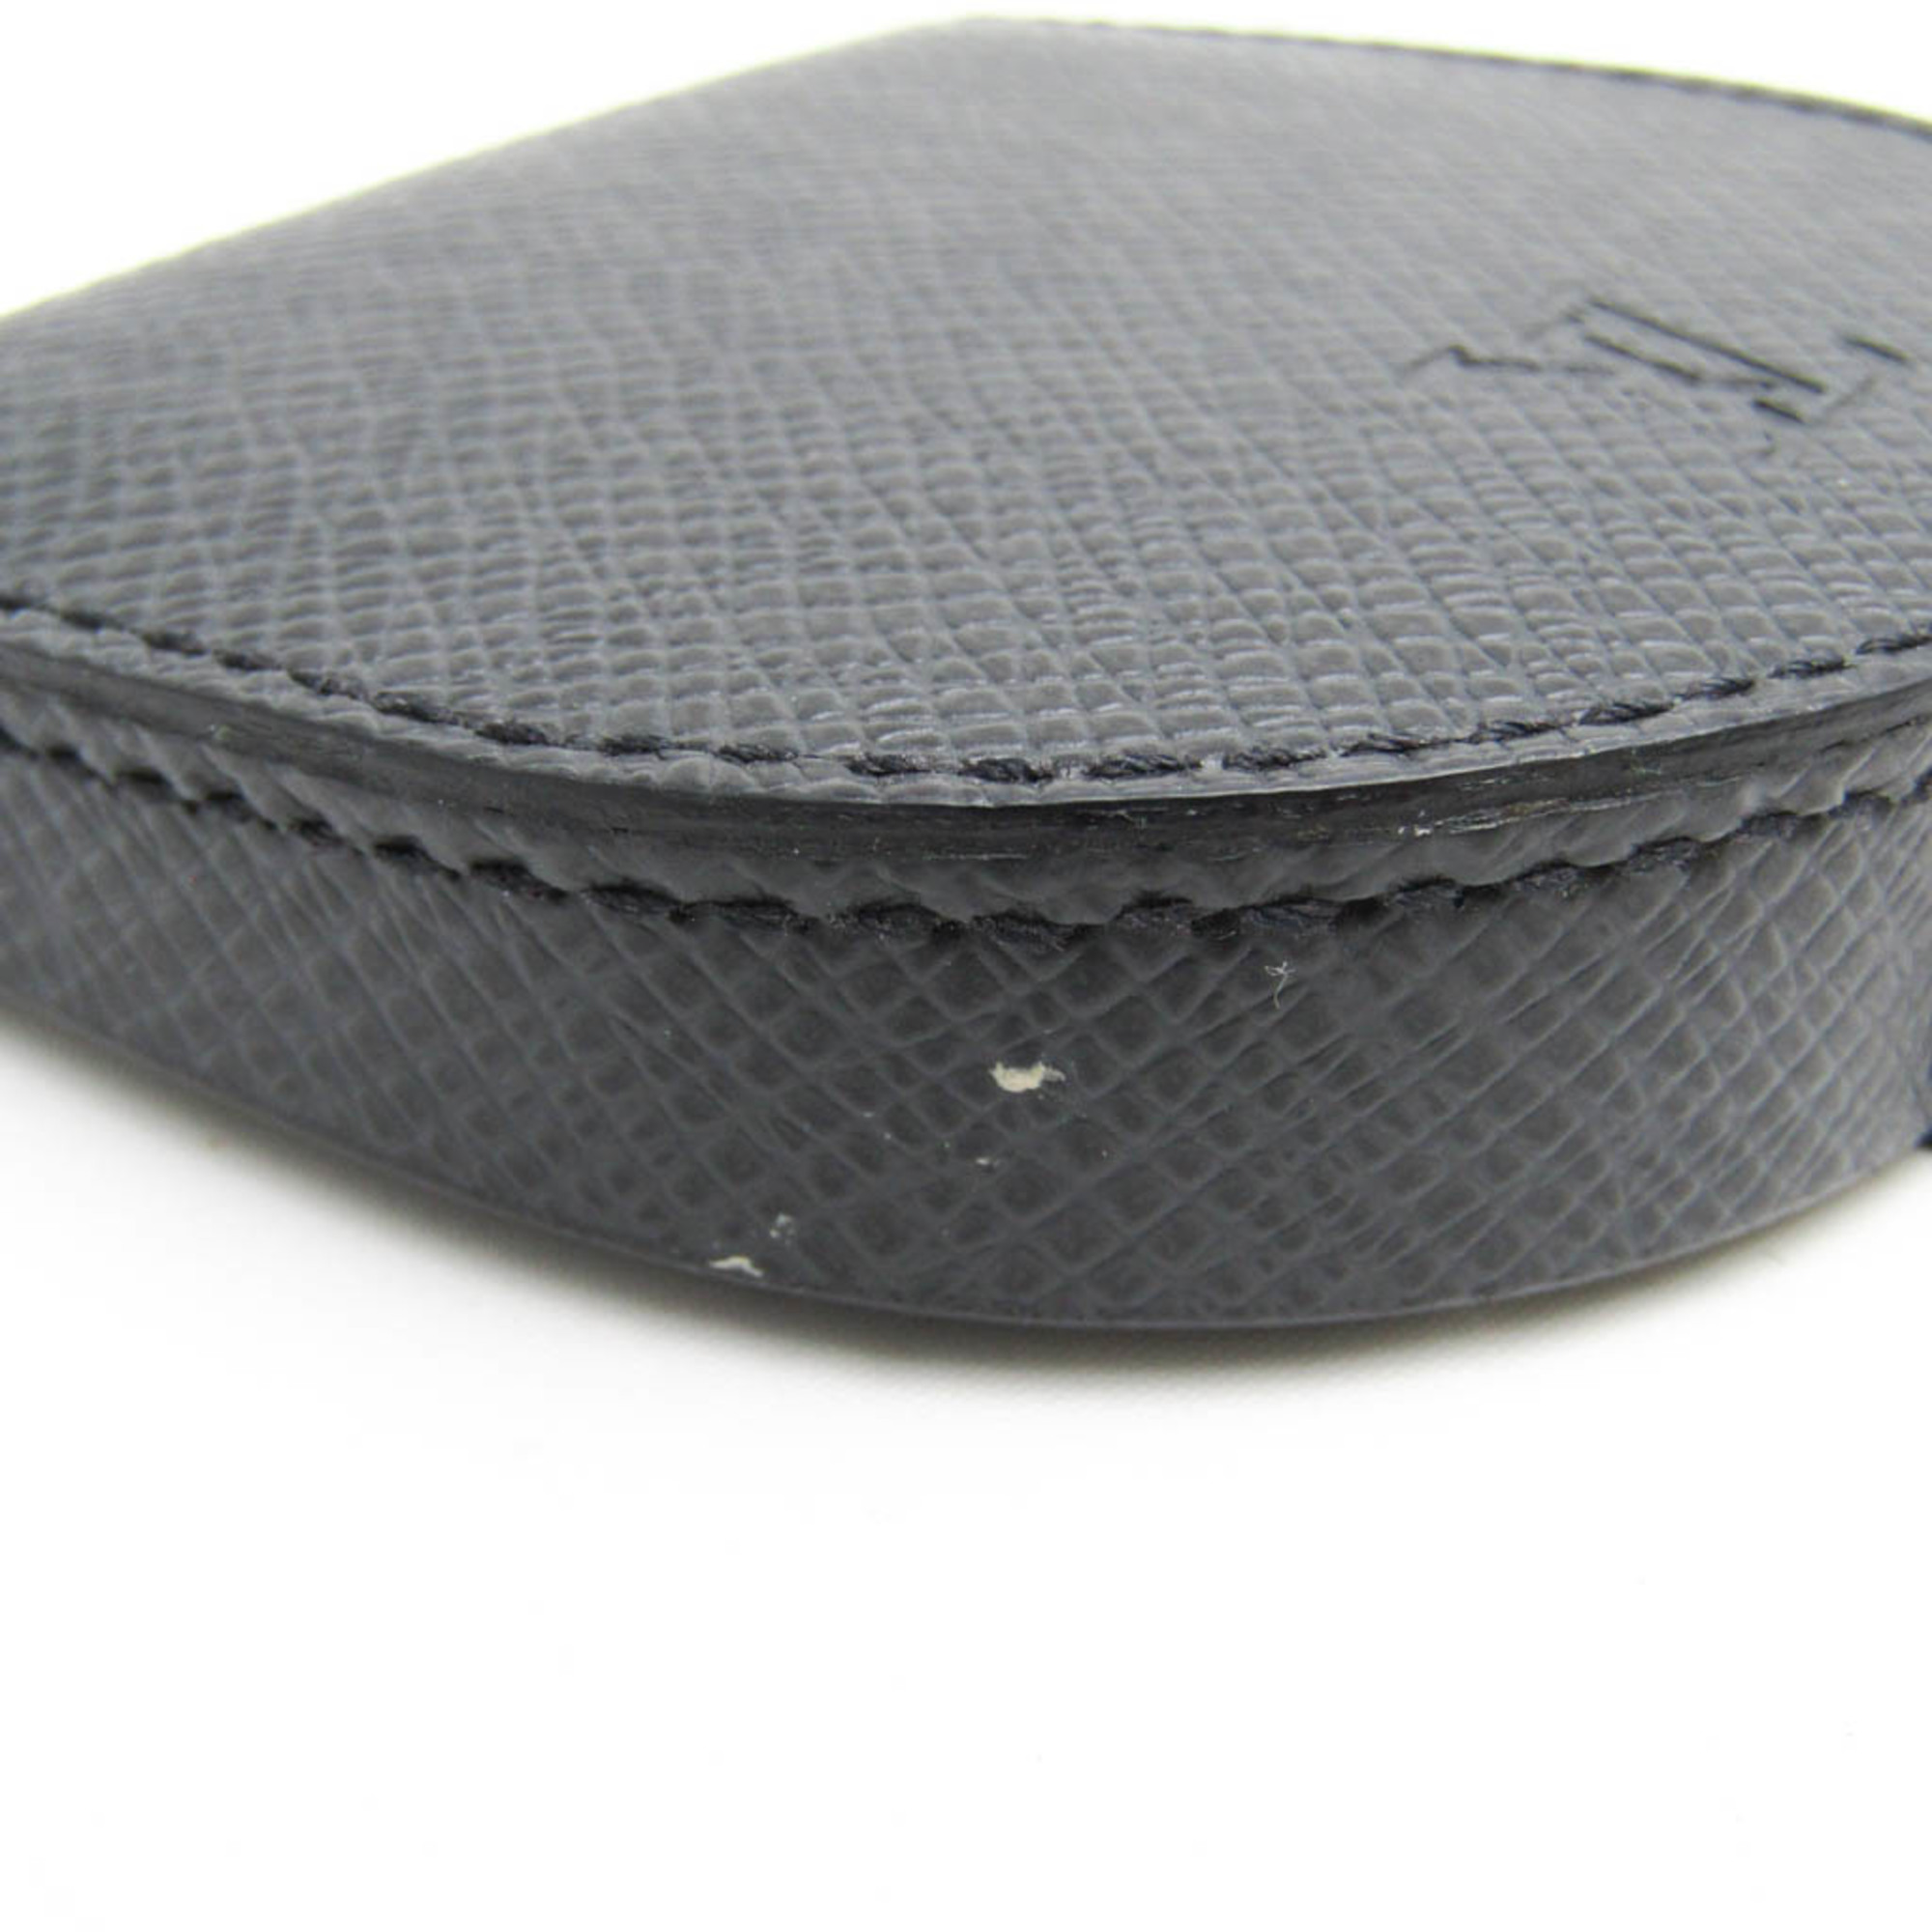 Louis Vuitton Taiga Porte Monnaie Cuvette M64422 Men's Taiga Leather Coin Purse/coin Case Ardoise